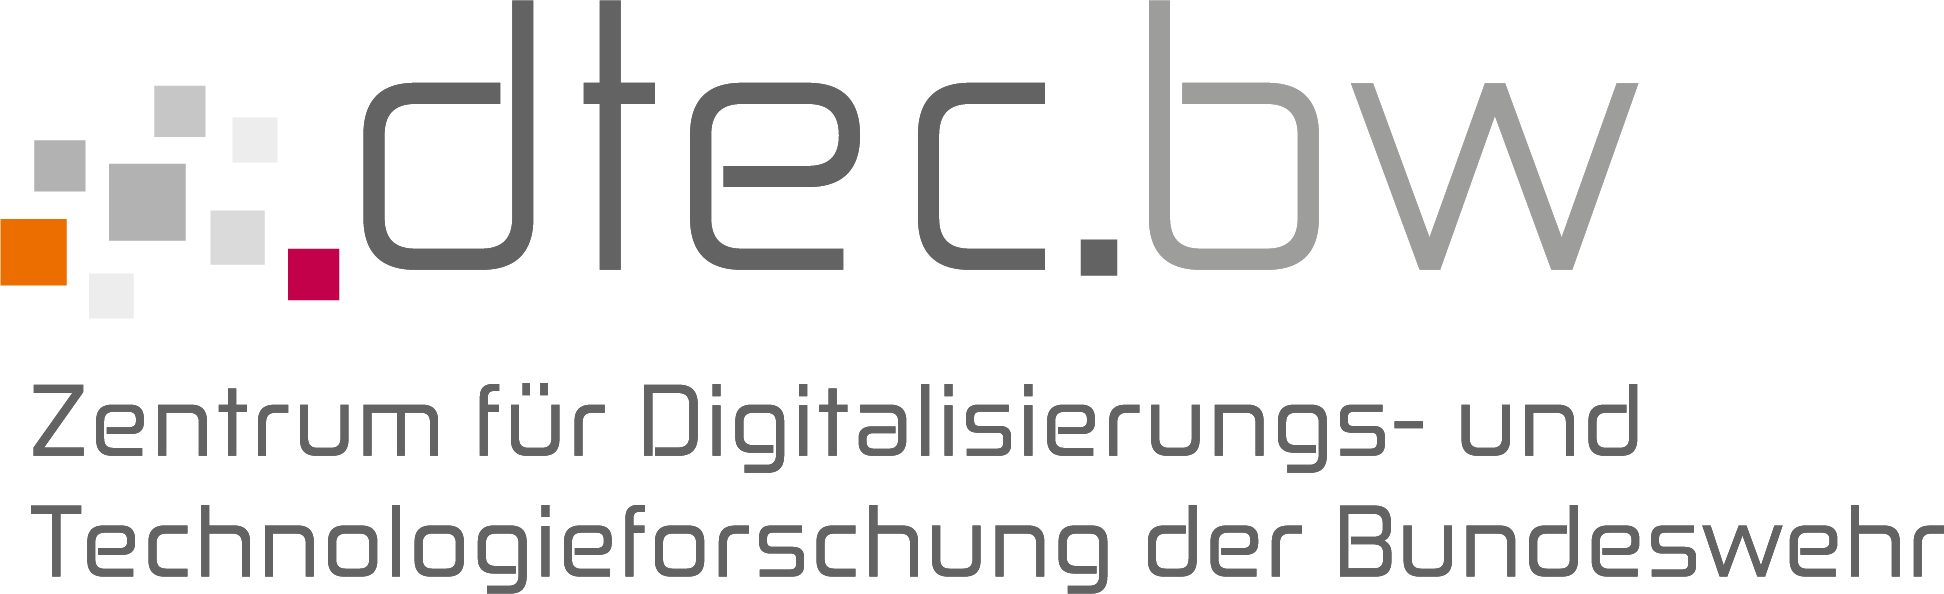 dtec.bw_Logo_RGB_komplett.png